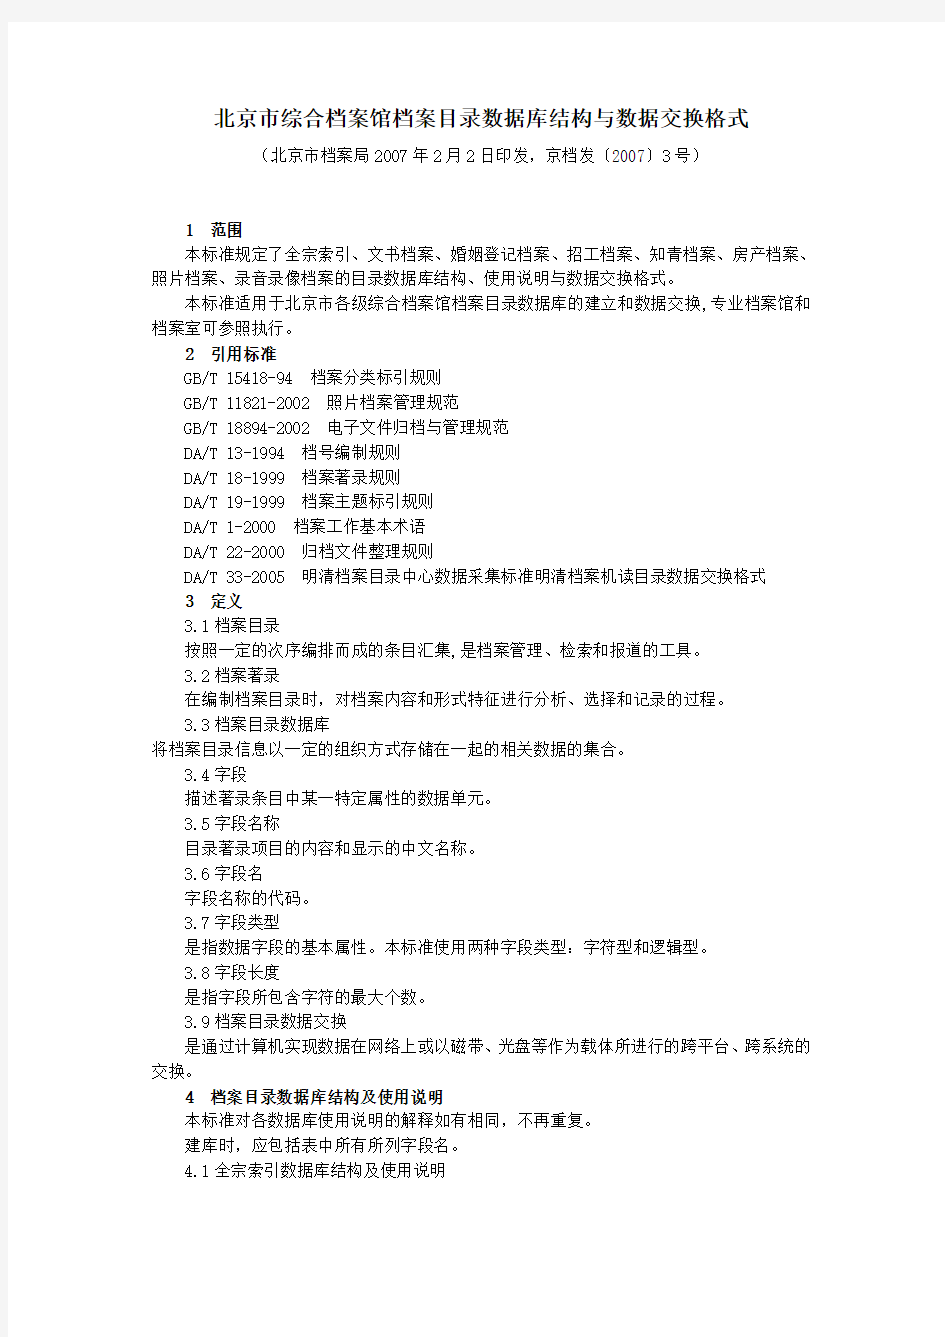 (档案管理)北京市综合档案馆档案目录数据库结构与数据交换格式